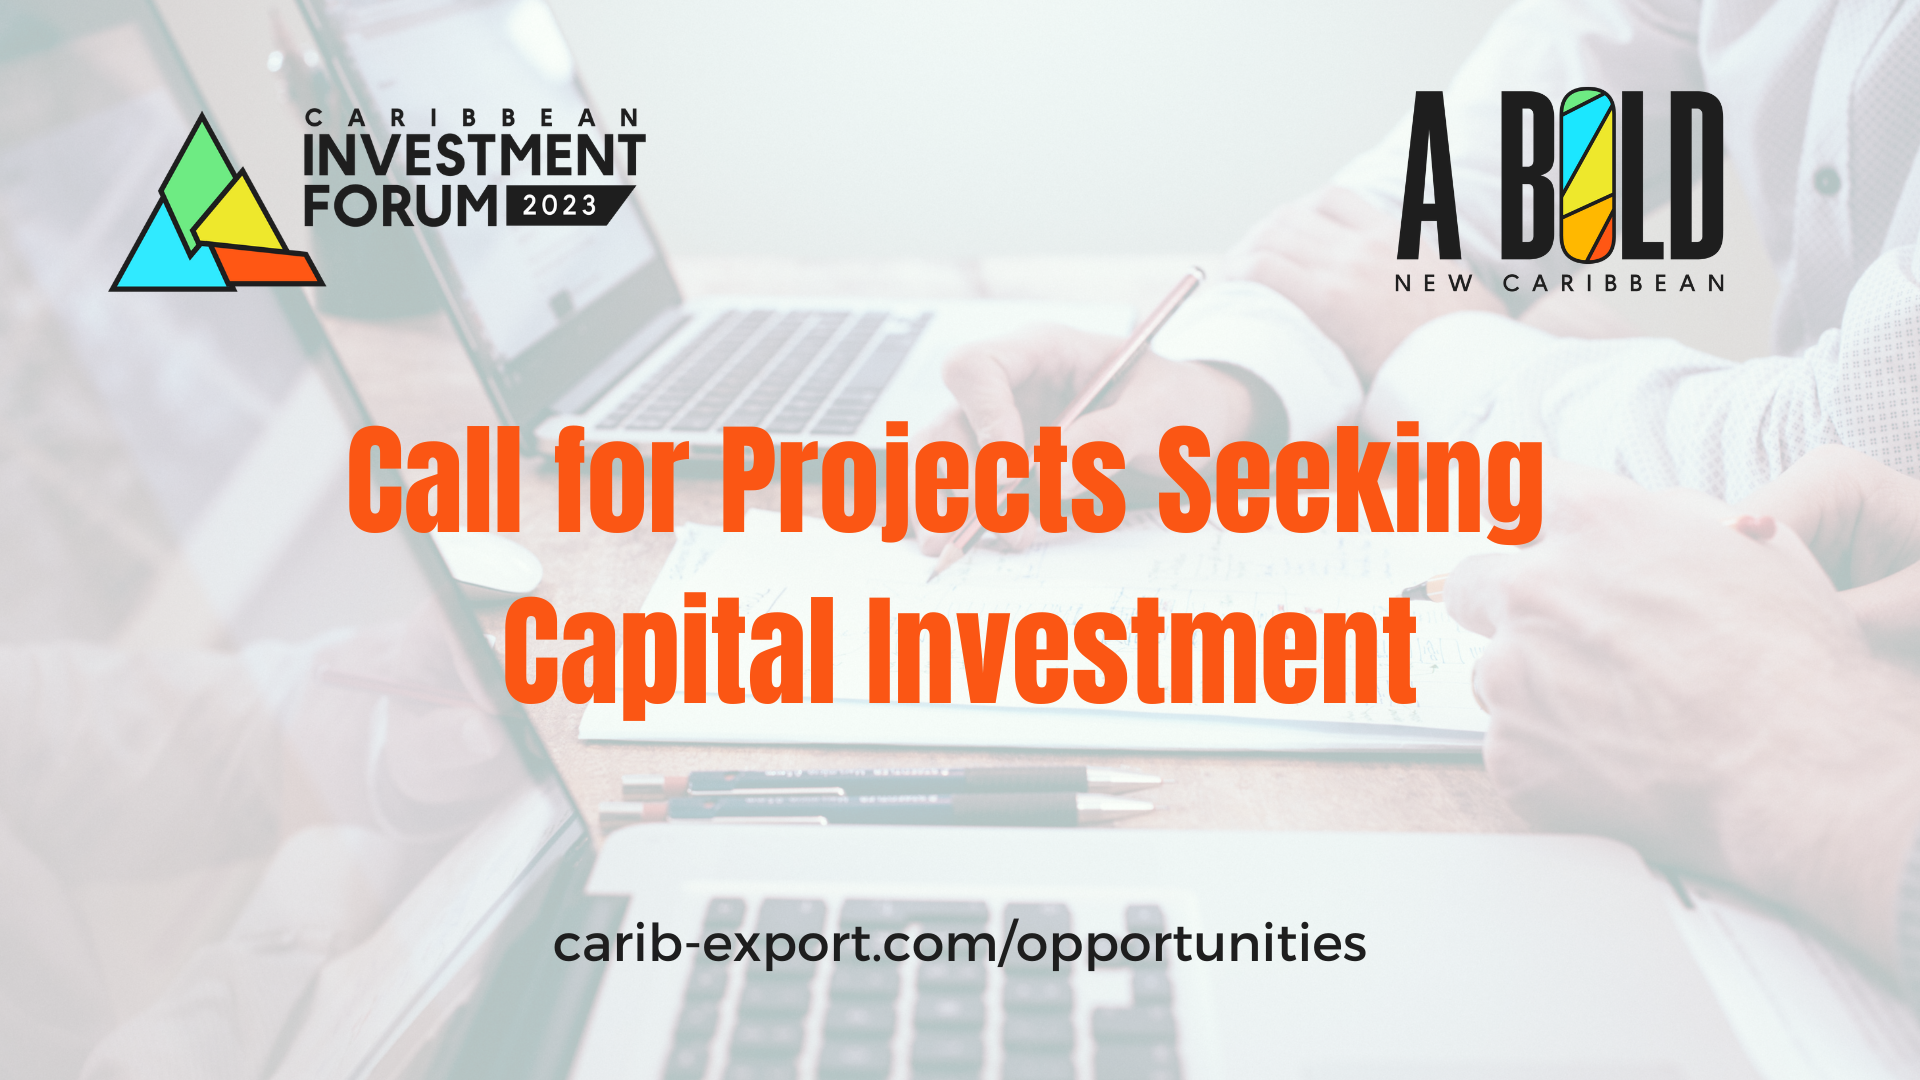 Oproep voor projecten die op zoek zijn naar kapitaalinvesteringen